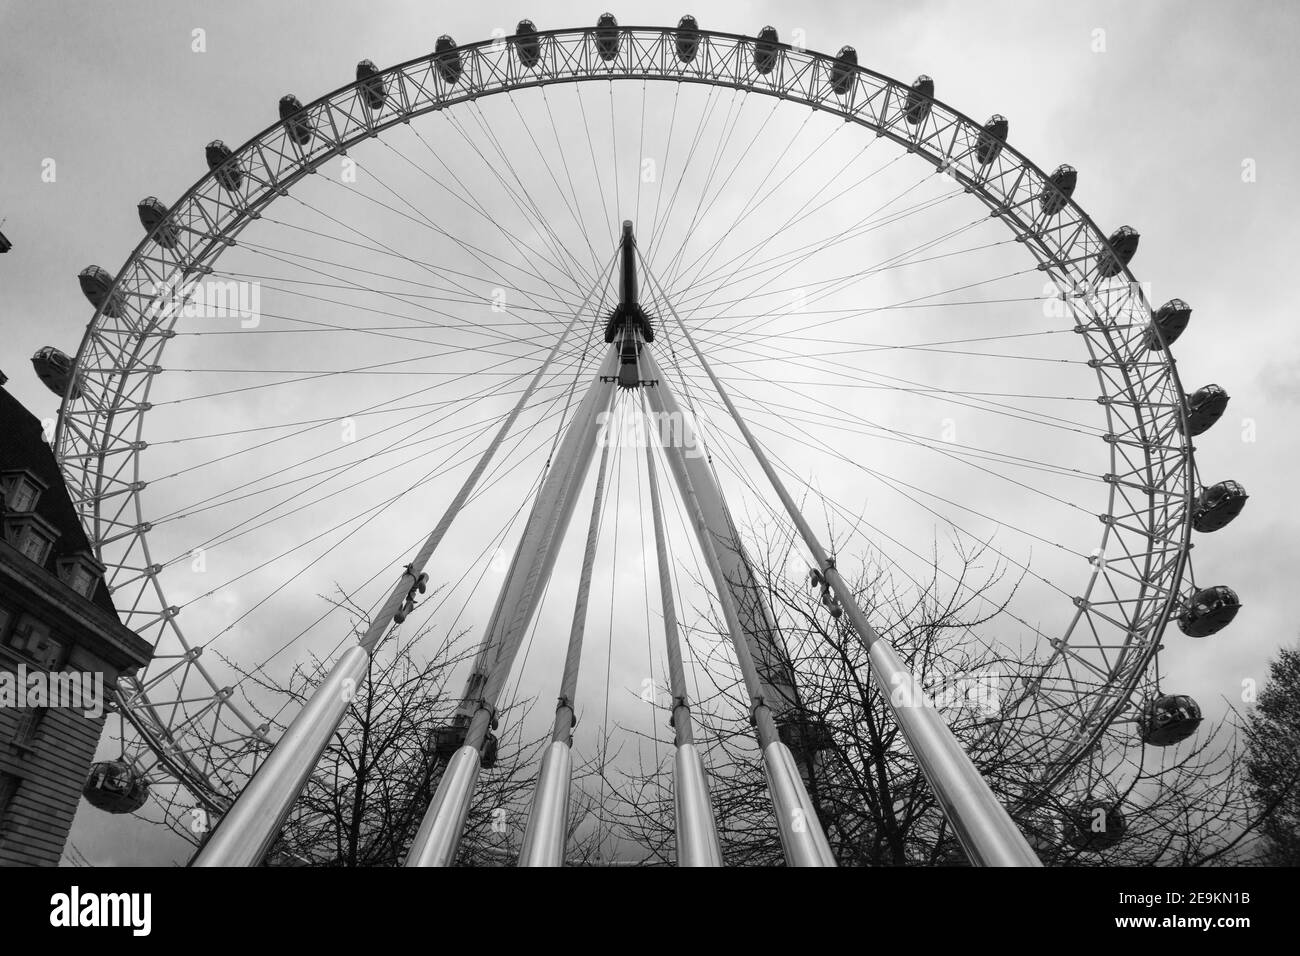 Vue rapprochée du London Eye, ou Millennium Wheel, la roue d'observation en porte-à-faux sur la rive sud de la Tamise, Londres Banque D'Images